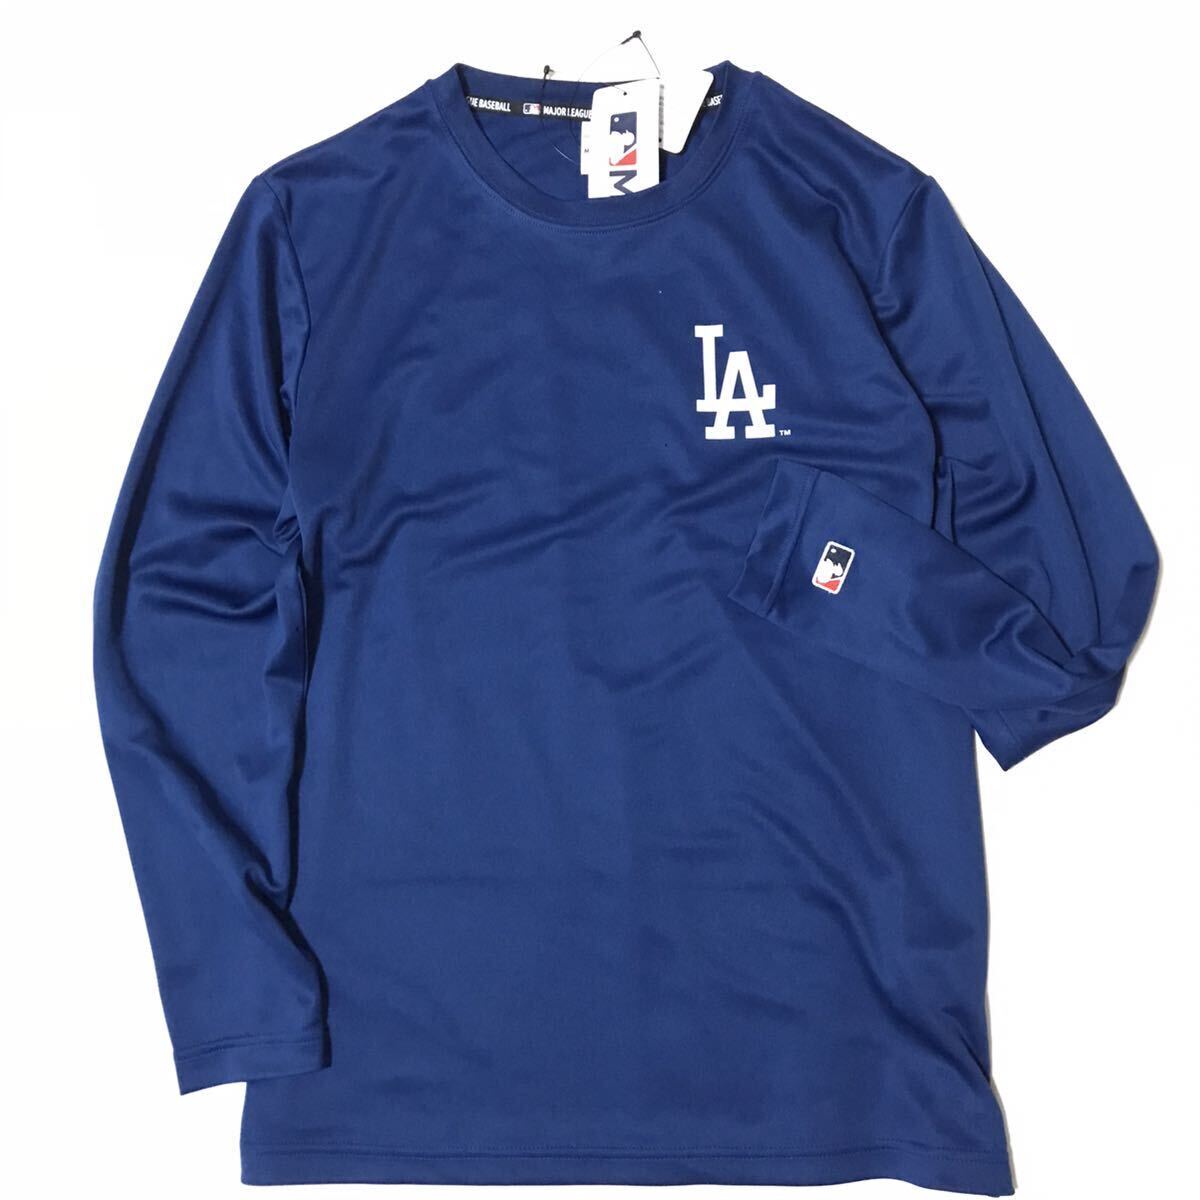 ◎142新品【メンズLL】ブルー MLB公式 ロサンゼルス・ドジャース ドライメッシュ ロングTシャツ ワンポイントロゴ 大谷翔平 山本由伸の画像2